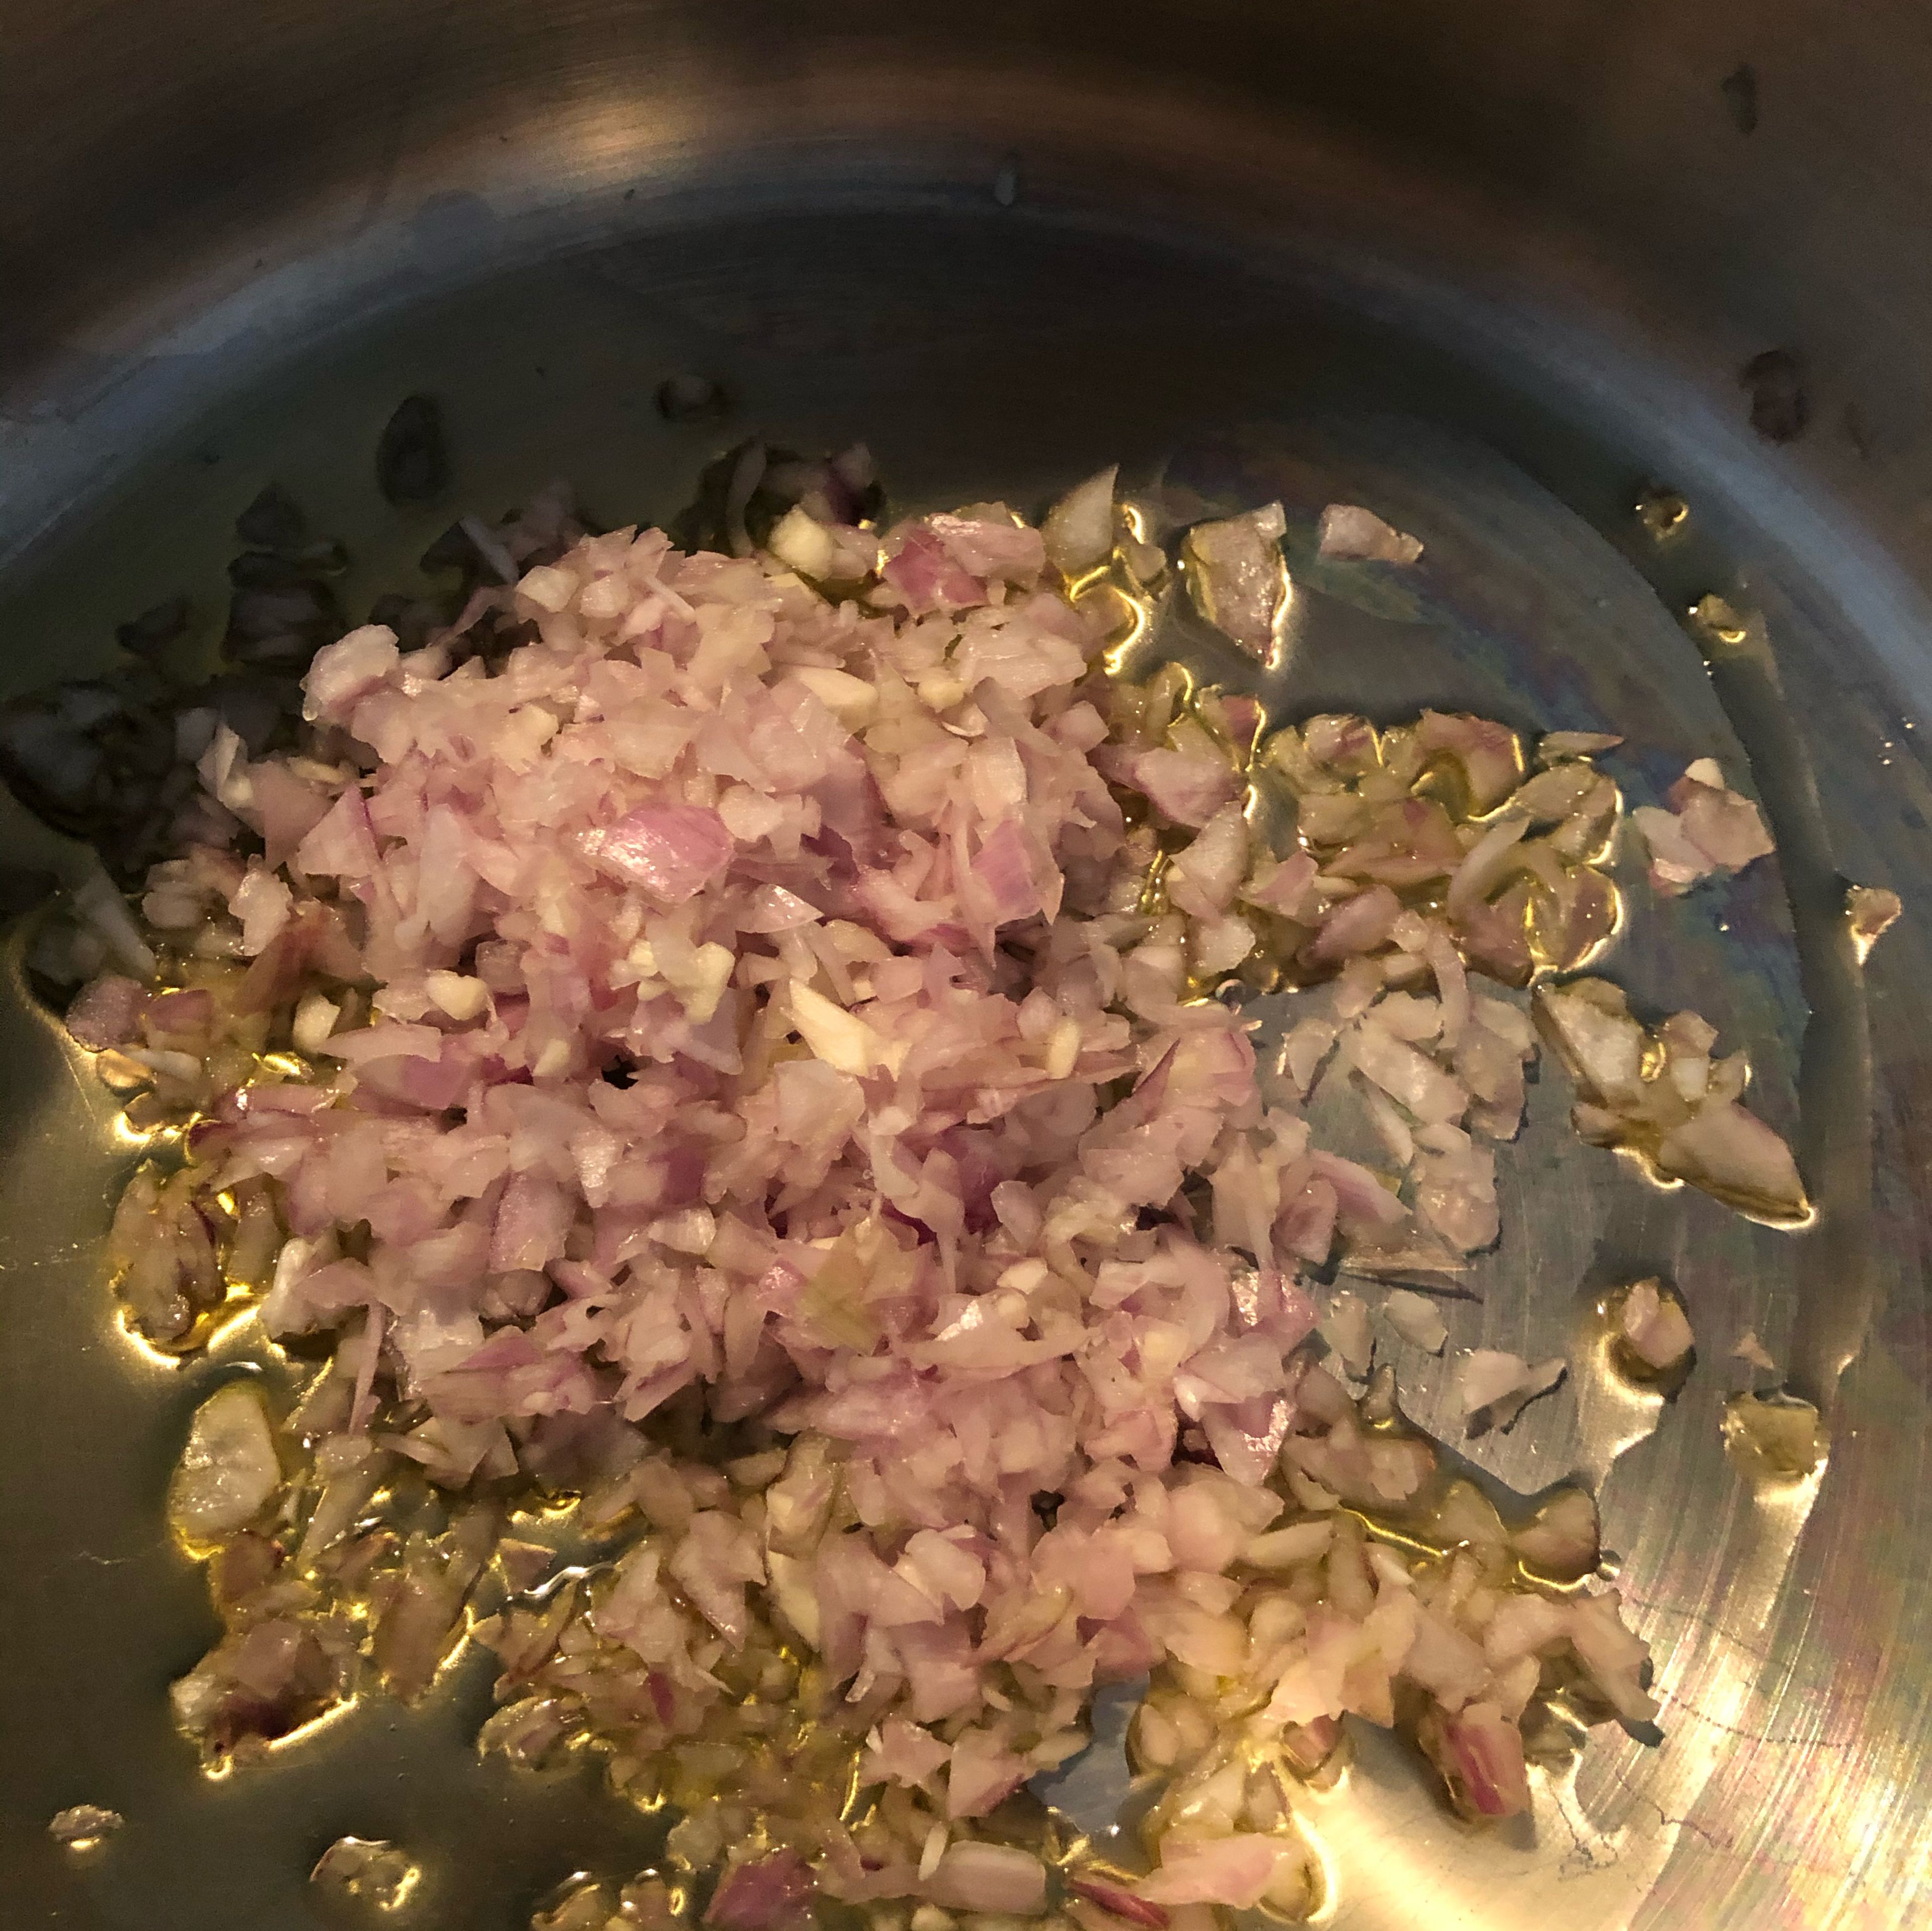 Die Schalotten und den Knoblauch in Olivenöl anschwitzen. Danach den Kohlenkohl und die Kartoffeln hinzufügen und einige Zeit anschwitzen, dabei ab und an umrühren. Nach etwa 5 Minuten mit etwa 2/3 des Weißweins ablöschen und aufkochen lassen. Danach auch die Gemüsebrühe hinzufügen